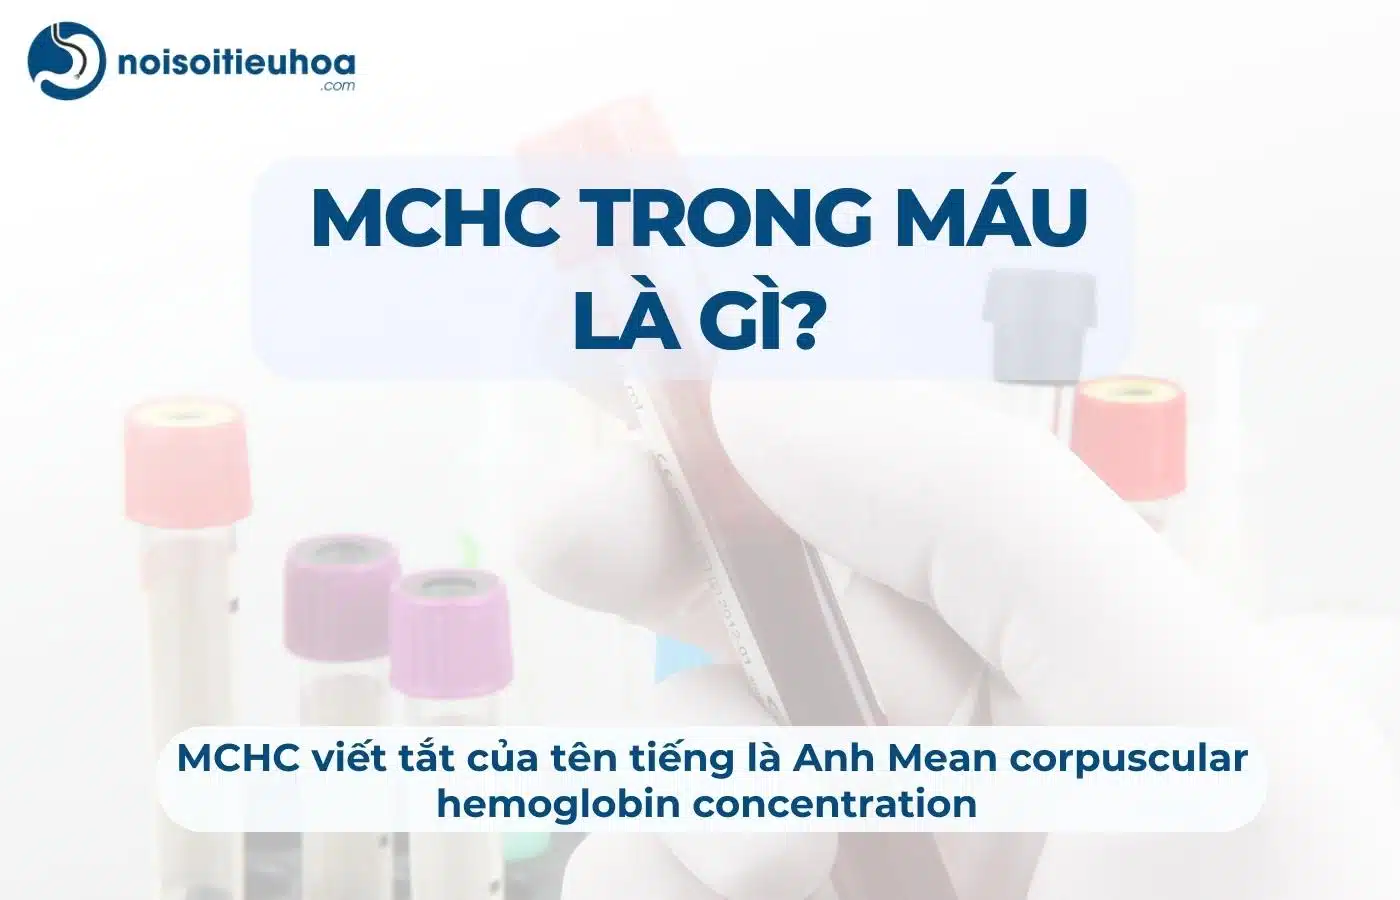 MCHC trong xét nghiệm máu là gì?